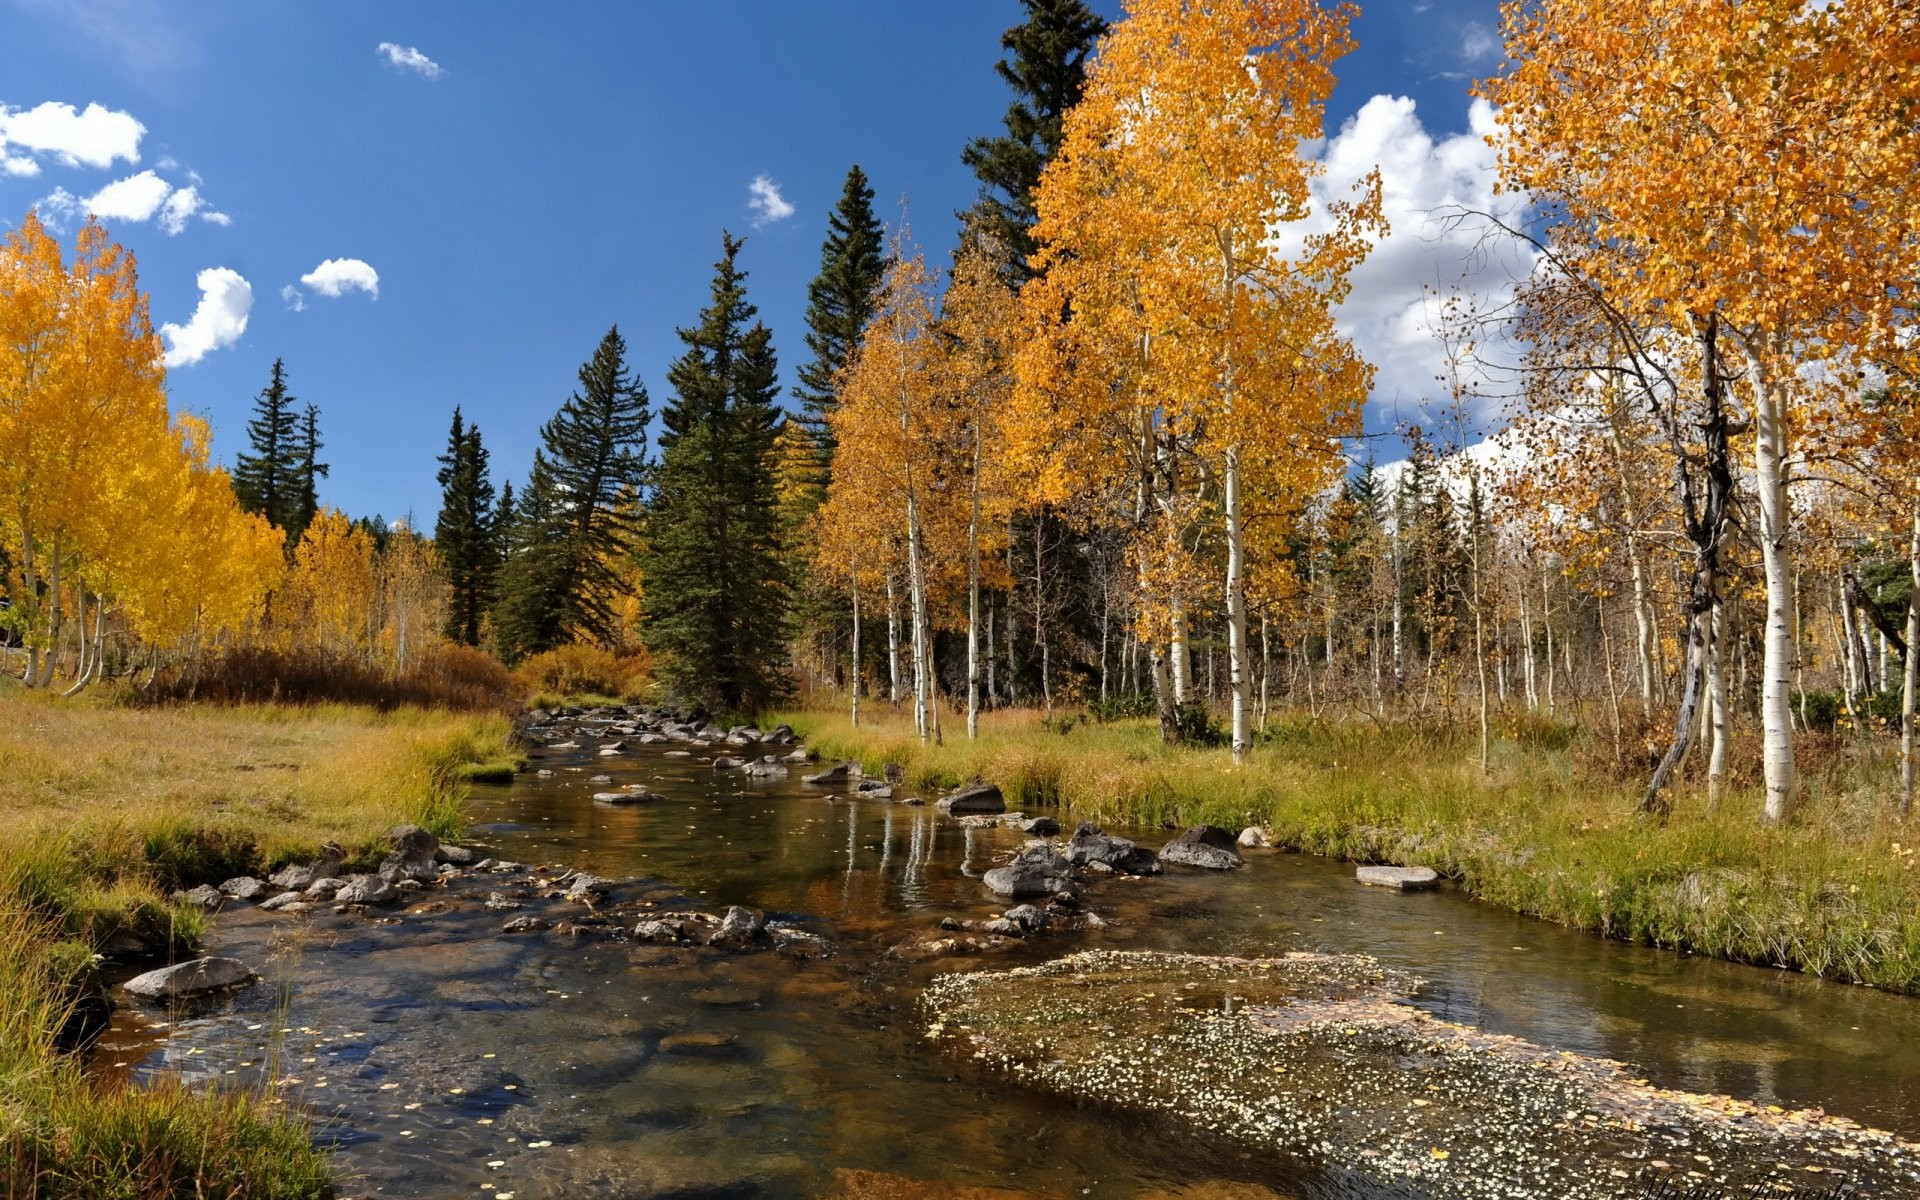 免费照片一条浅浅的河流穿过秋天的森林